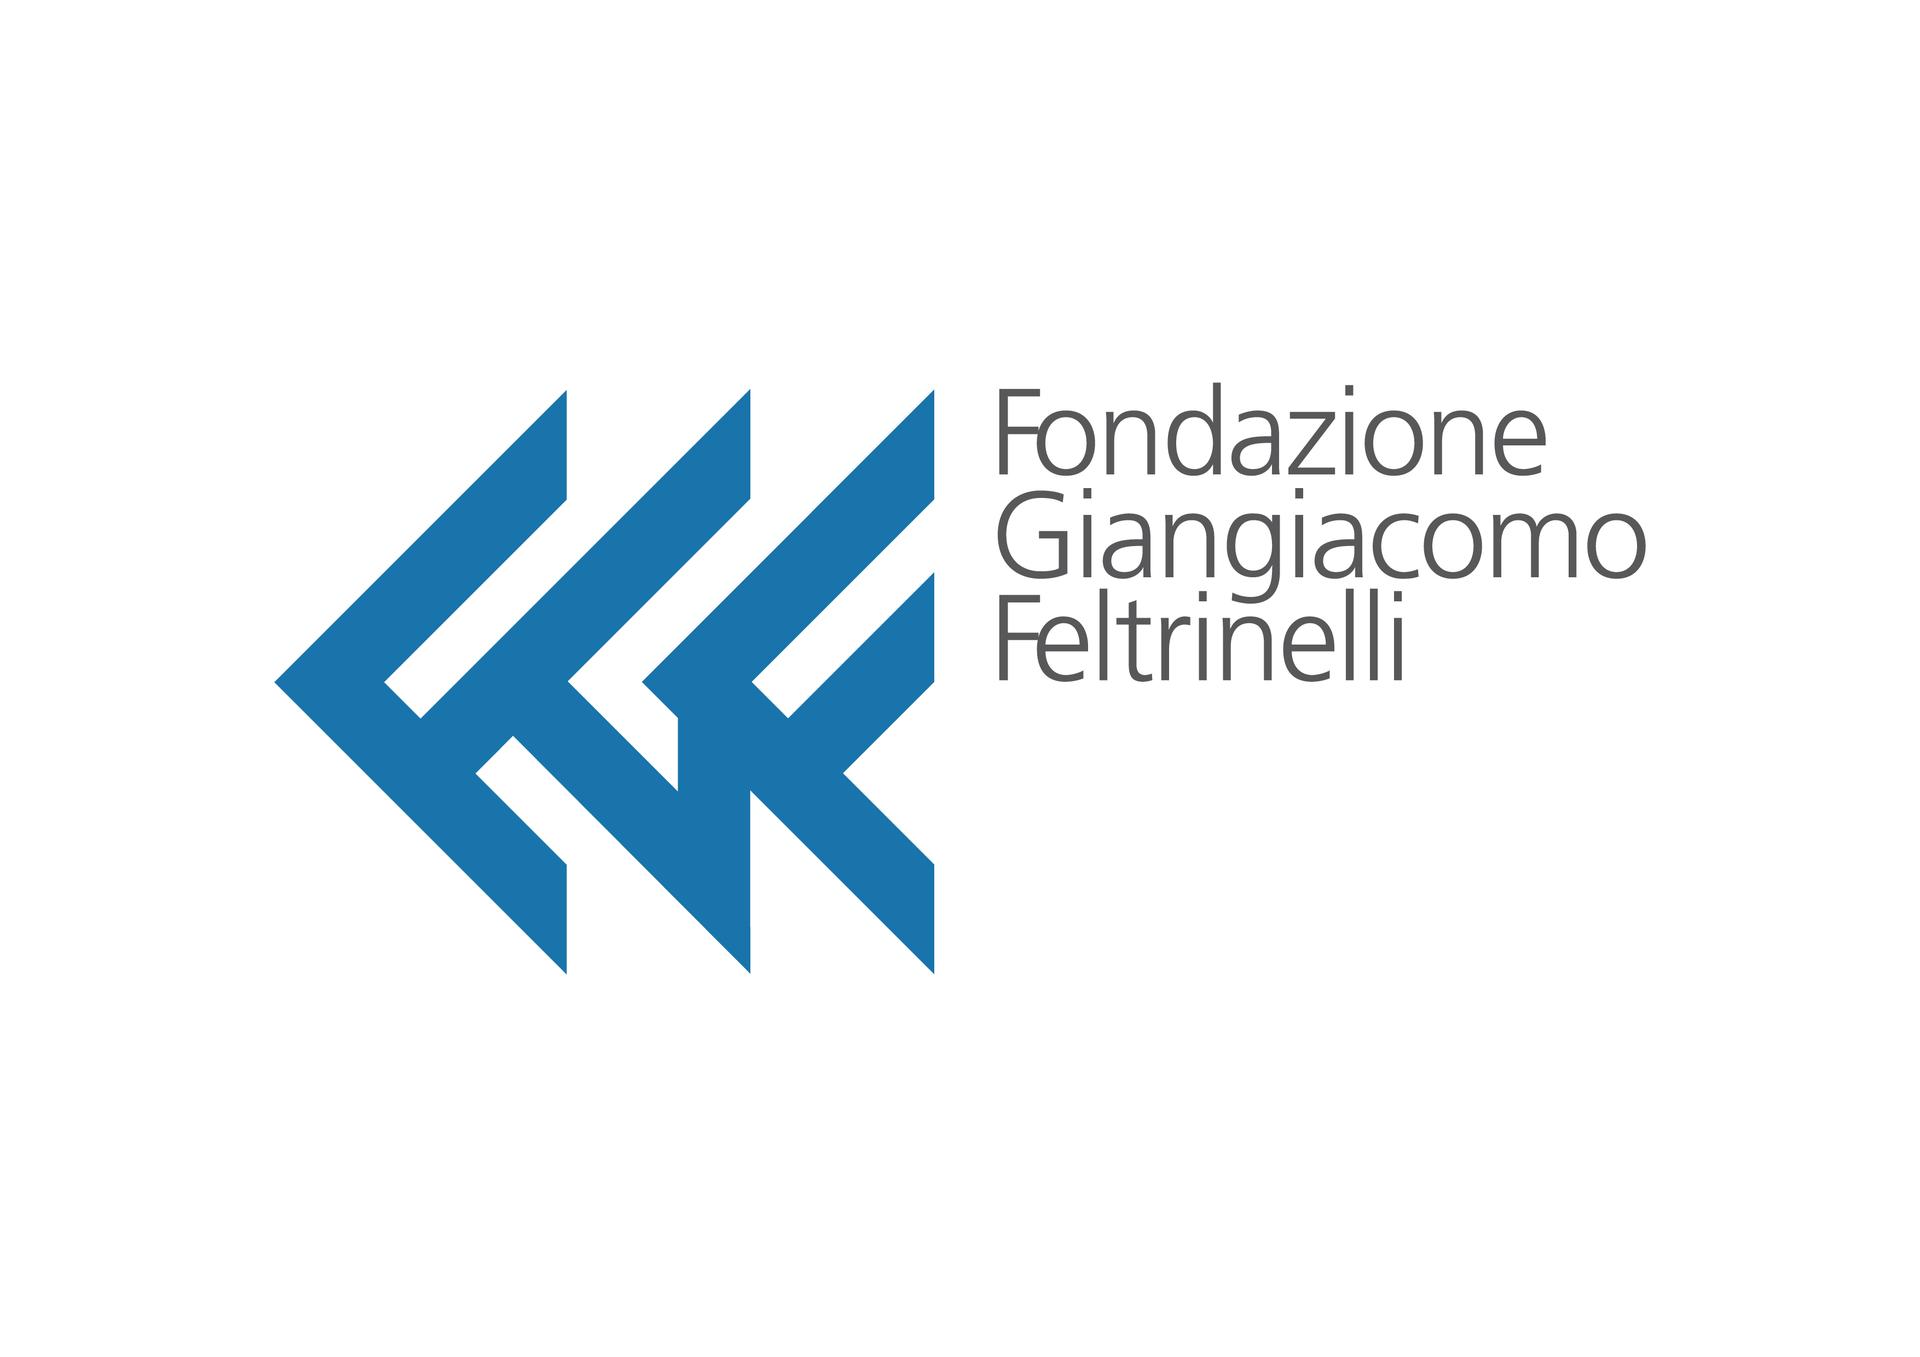 Economia e società: valori, geografie e organizzazioni. Giuliano Amato, Marco Morganti ed Ermes Ronchi in Fondazione Giangiacomo Feltrinelli